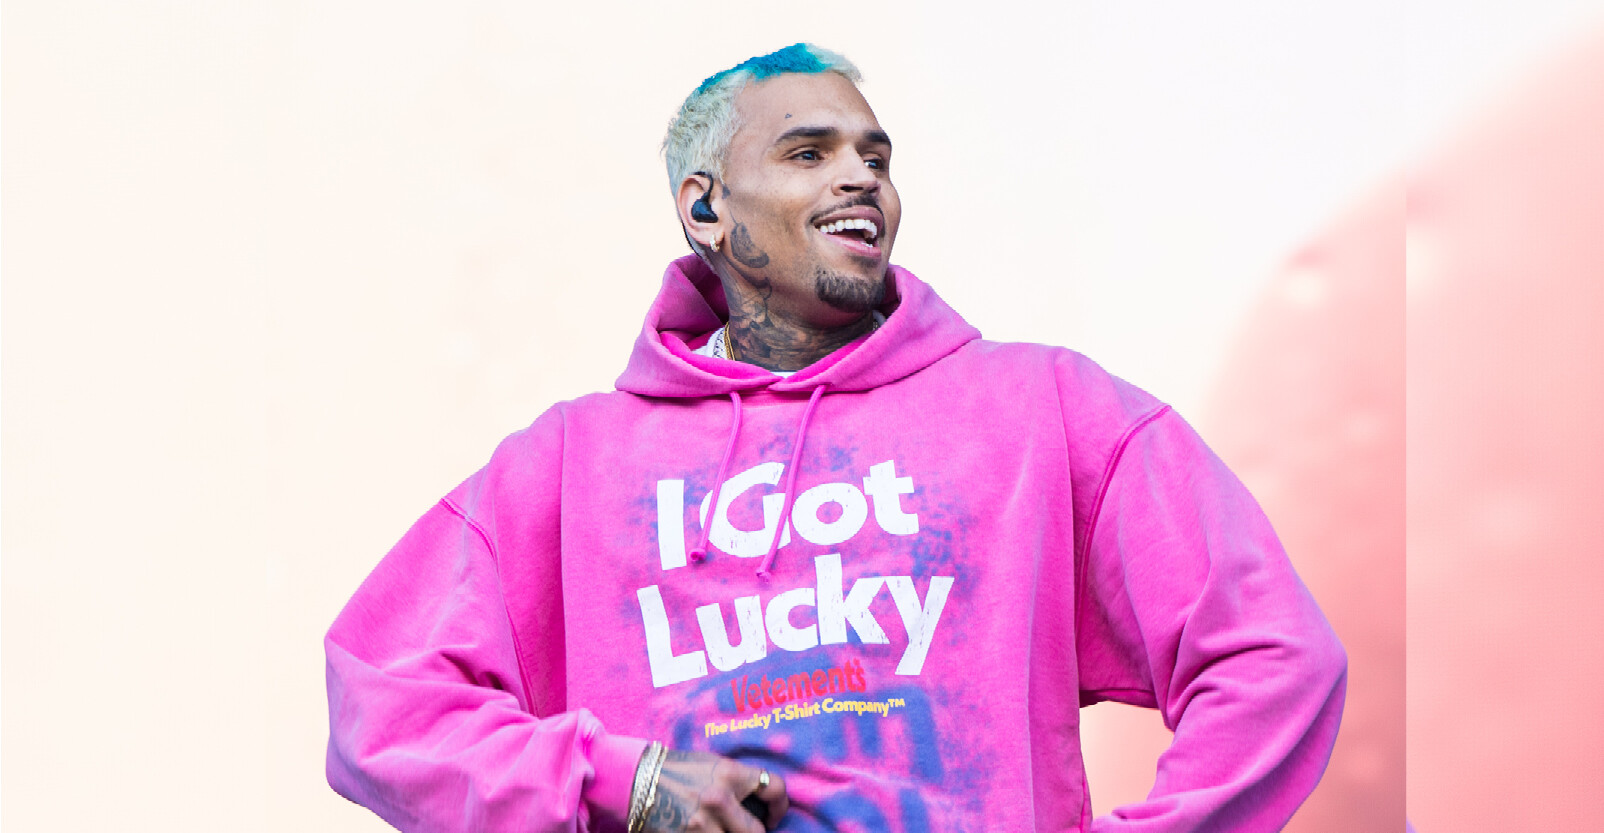 Chris Brown optreden lachend roze sweater tekst